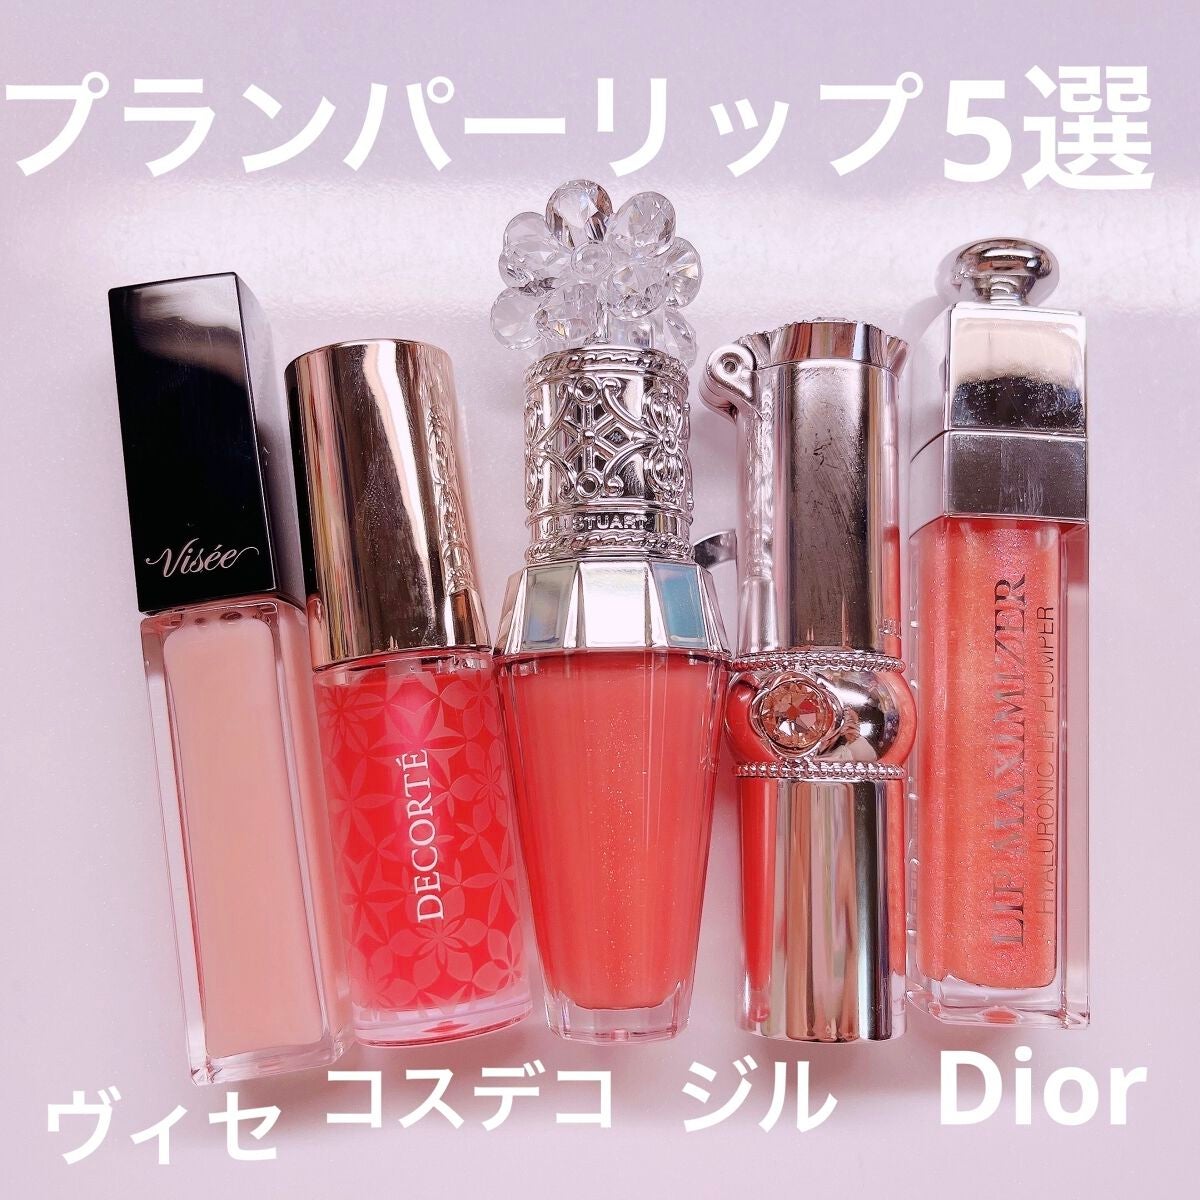 Dior ティント コスメデコルテセット